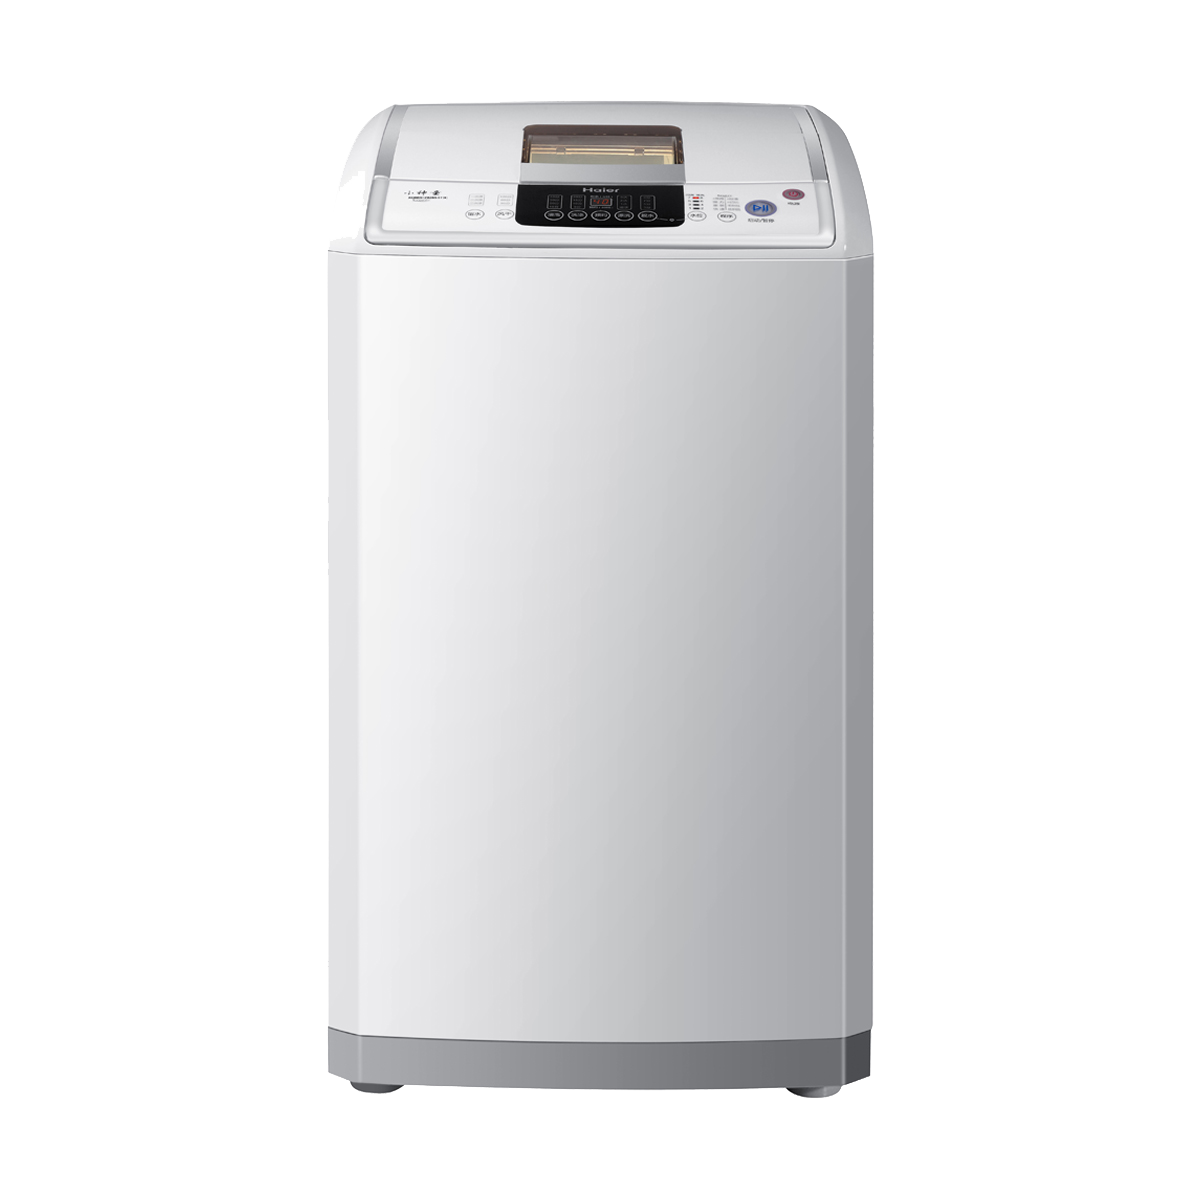 海尔Haier洗衣机 XQB65-Z828S 说明书